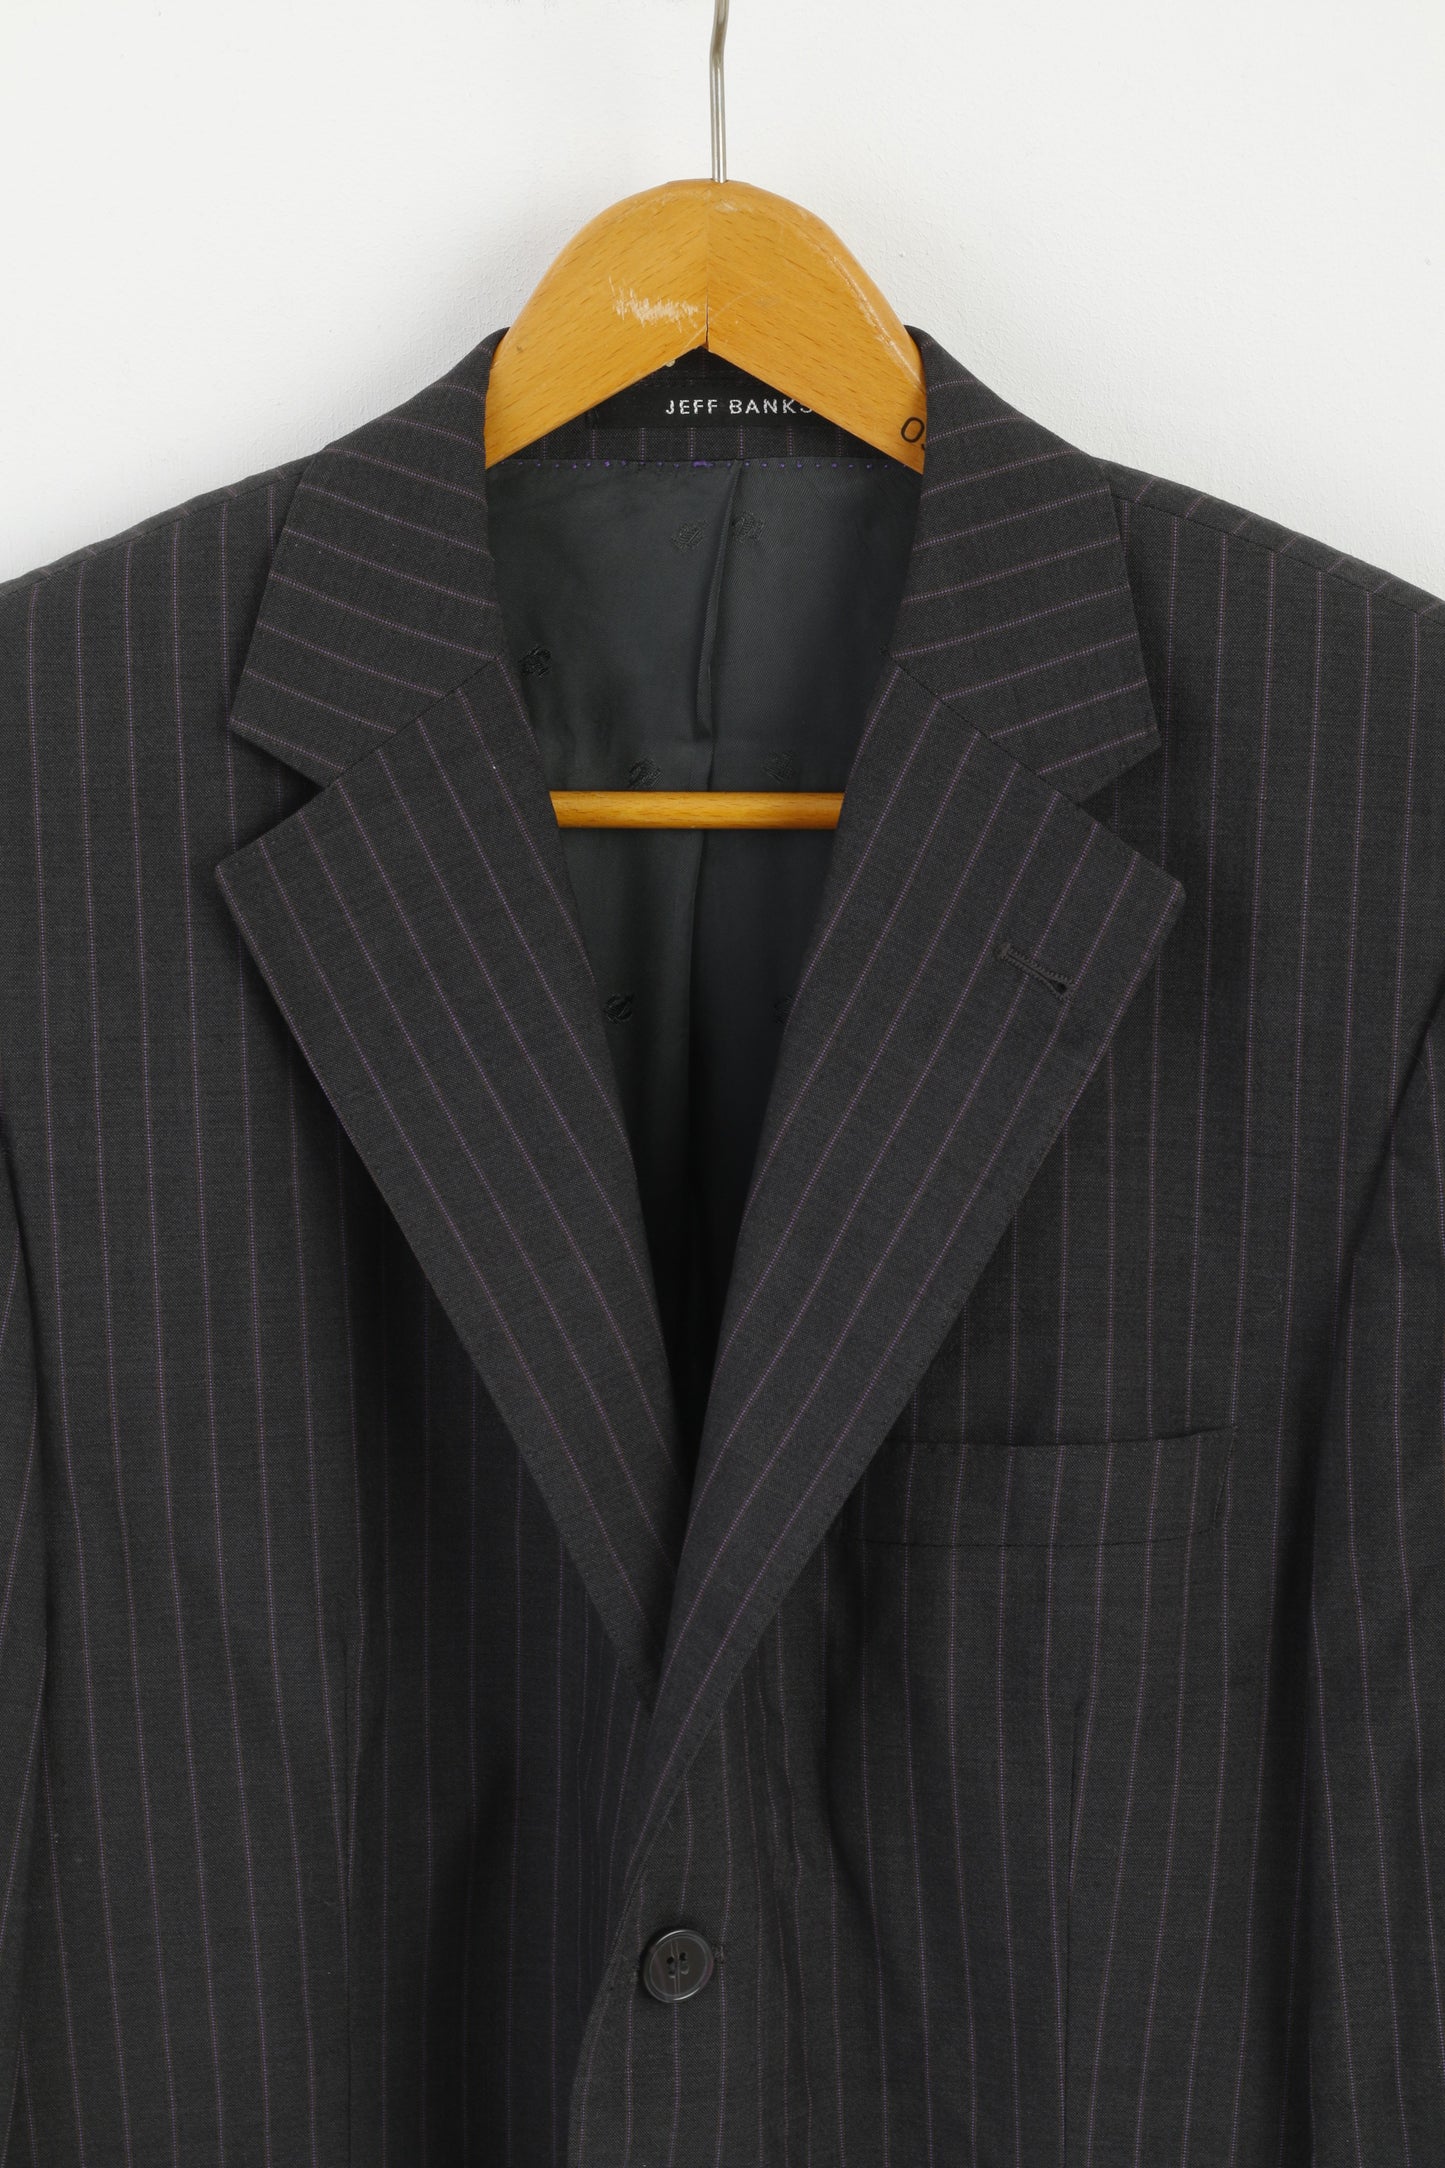 Jeff Banks Uomo 42S 52 Blazer Giacca monopetto in lana a righe viola grigio